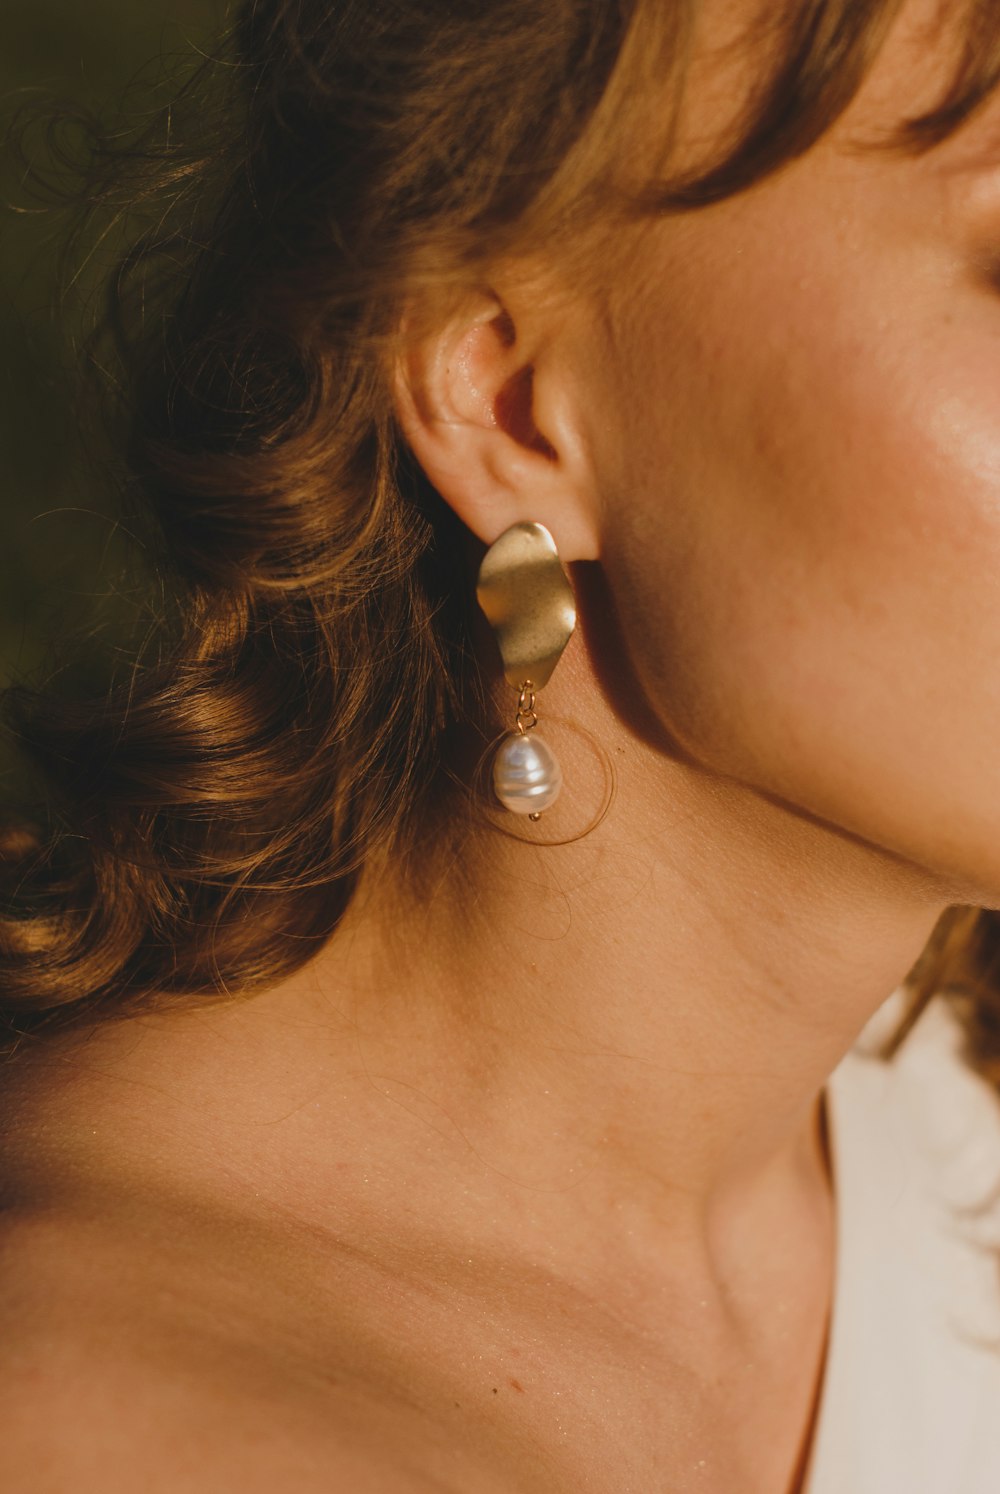 donna che indossa orecchino di perle bianche e d'argento